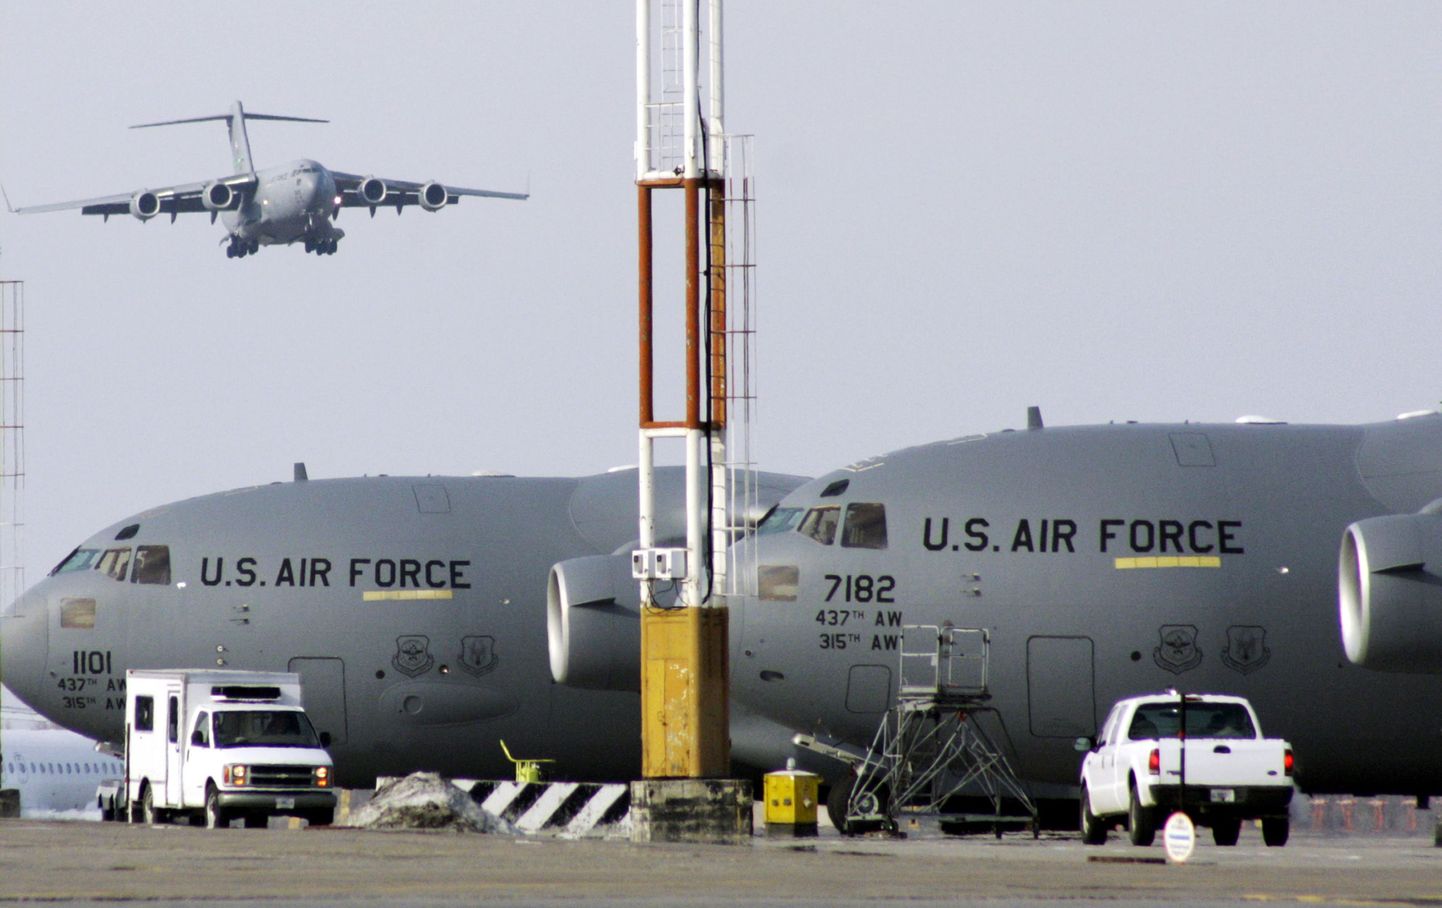 USA lennukid Manassi lennuväljal Kõrgõzstanis.